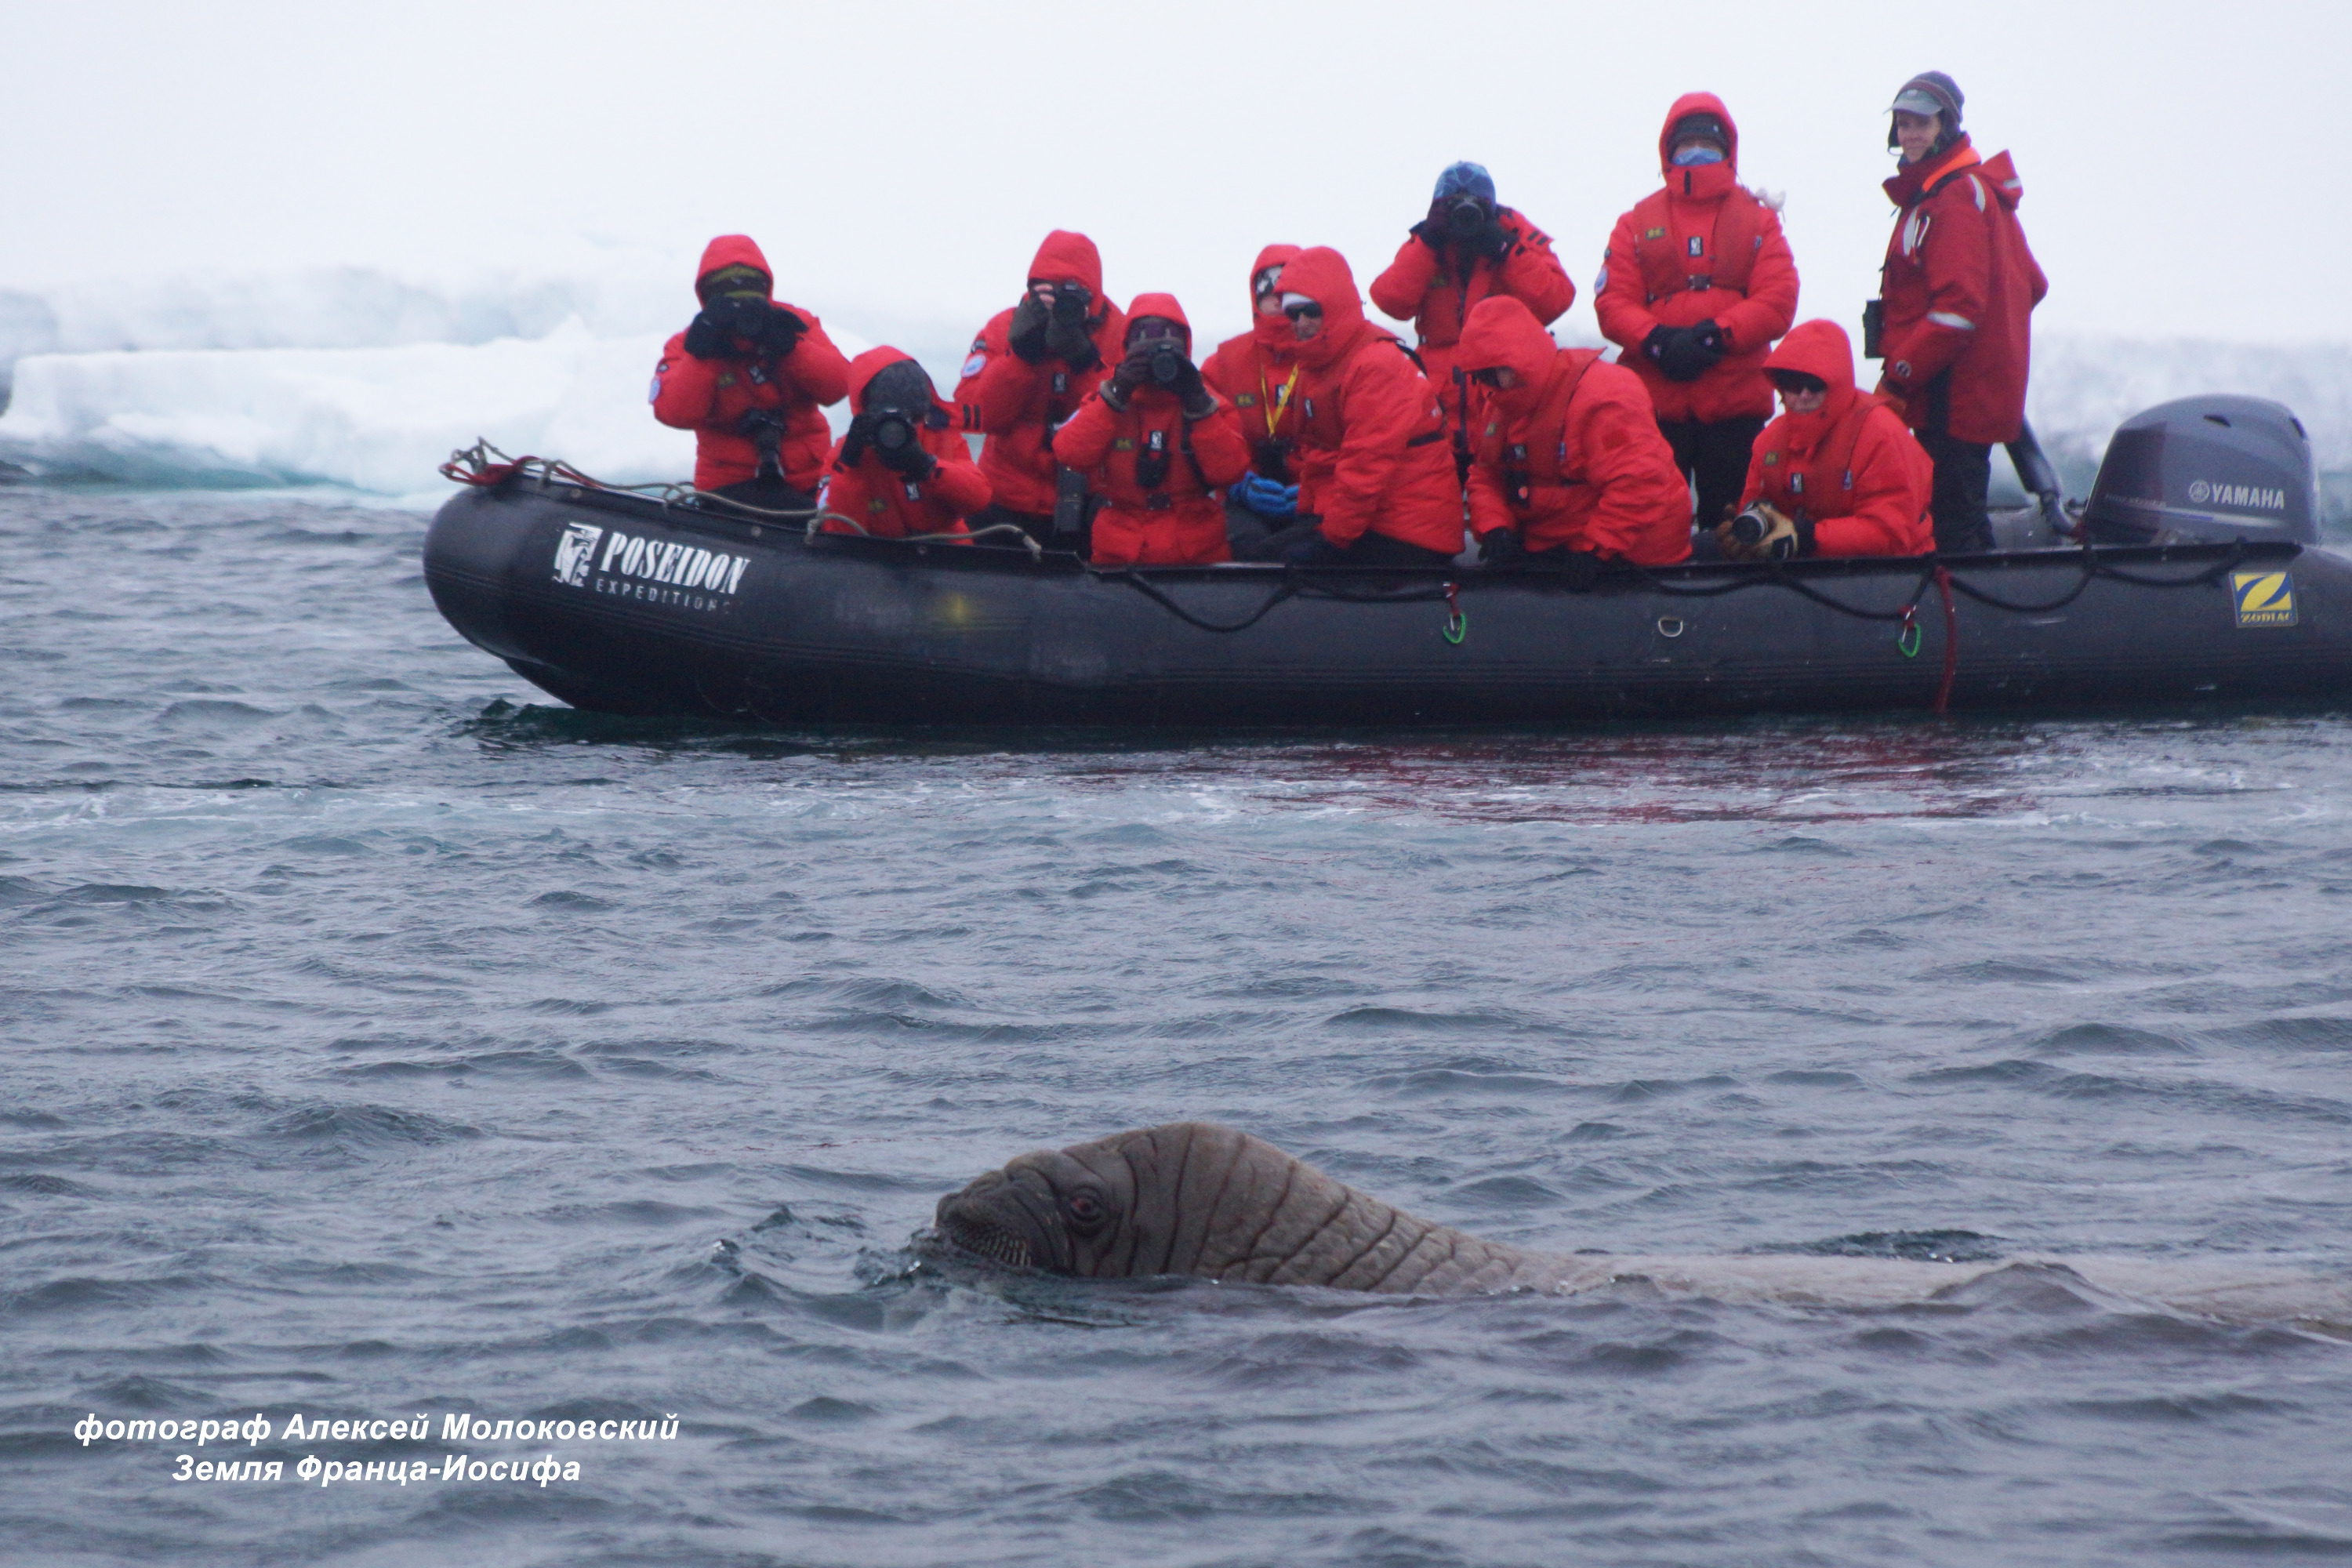 Туристов не подпускают близко к моржам — те могут напасть на лодку